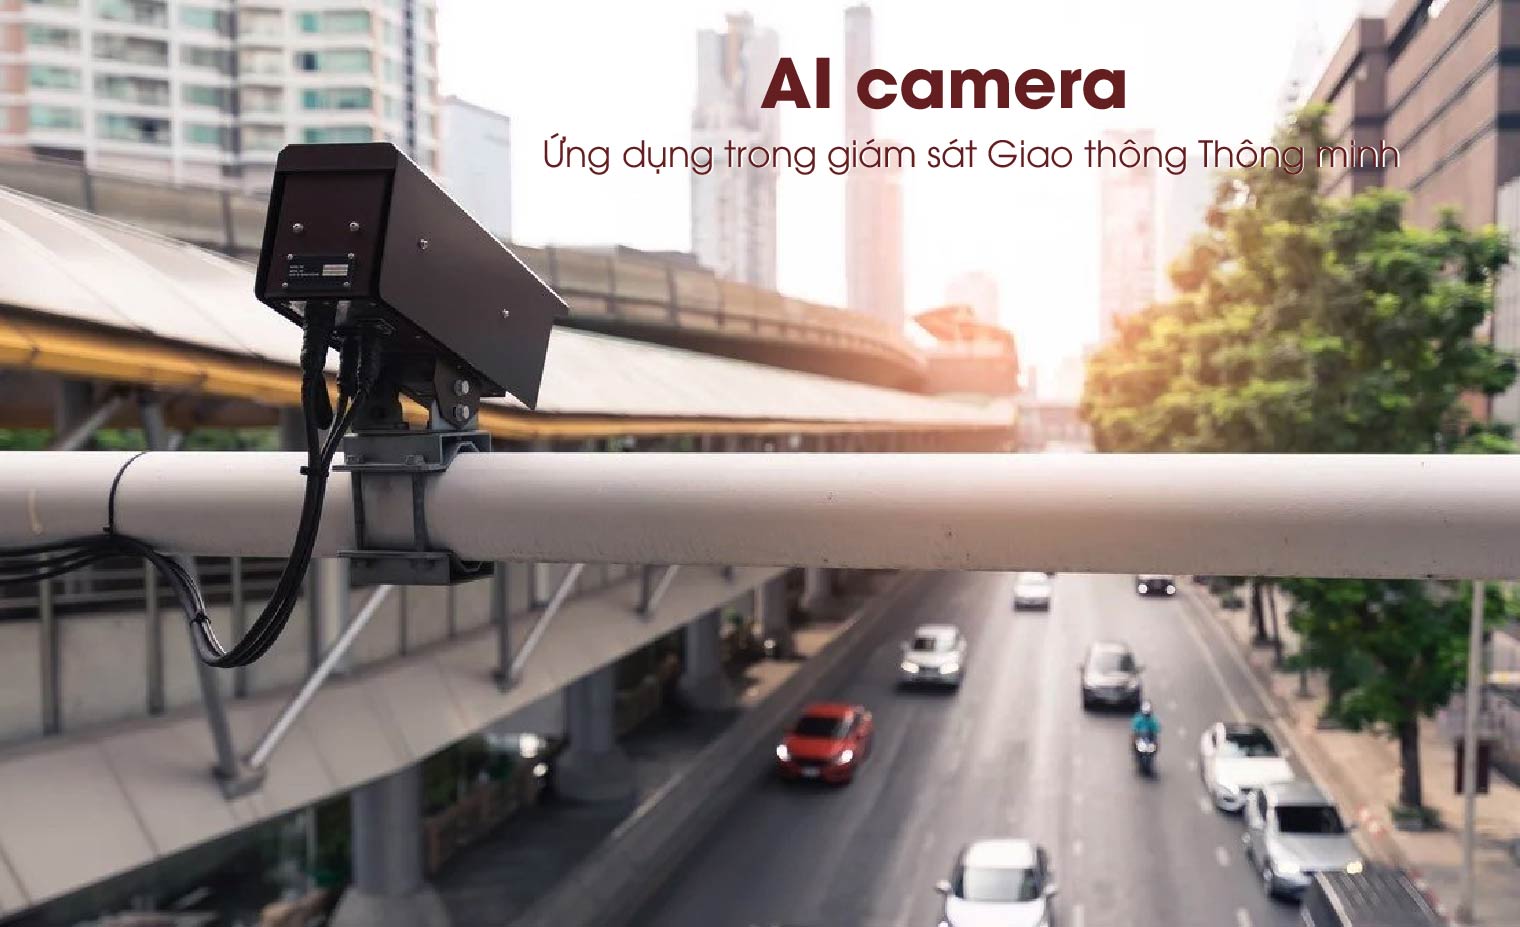 AI camera là gì? Ứng dụng AI camera trong giám sát giao thông thông minh